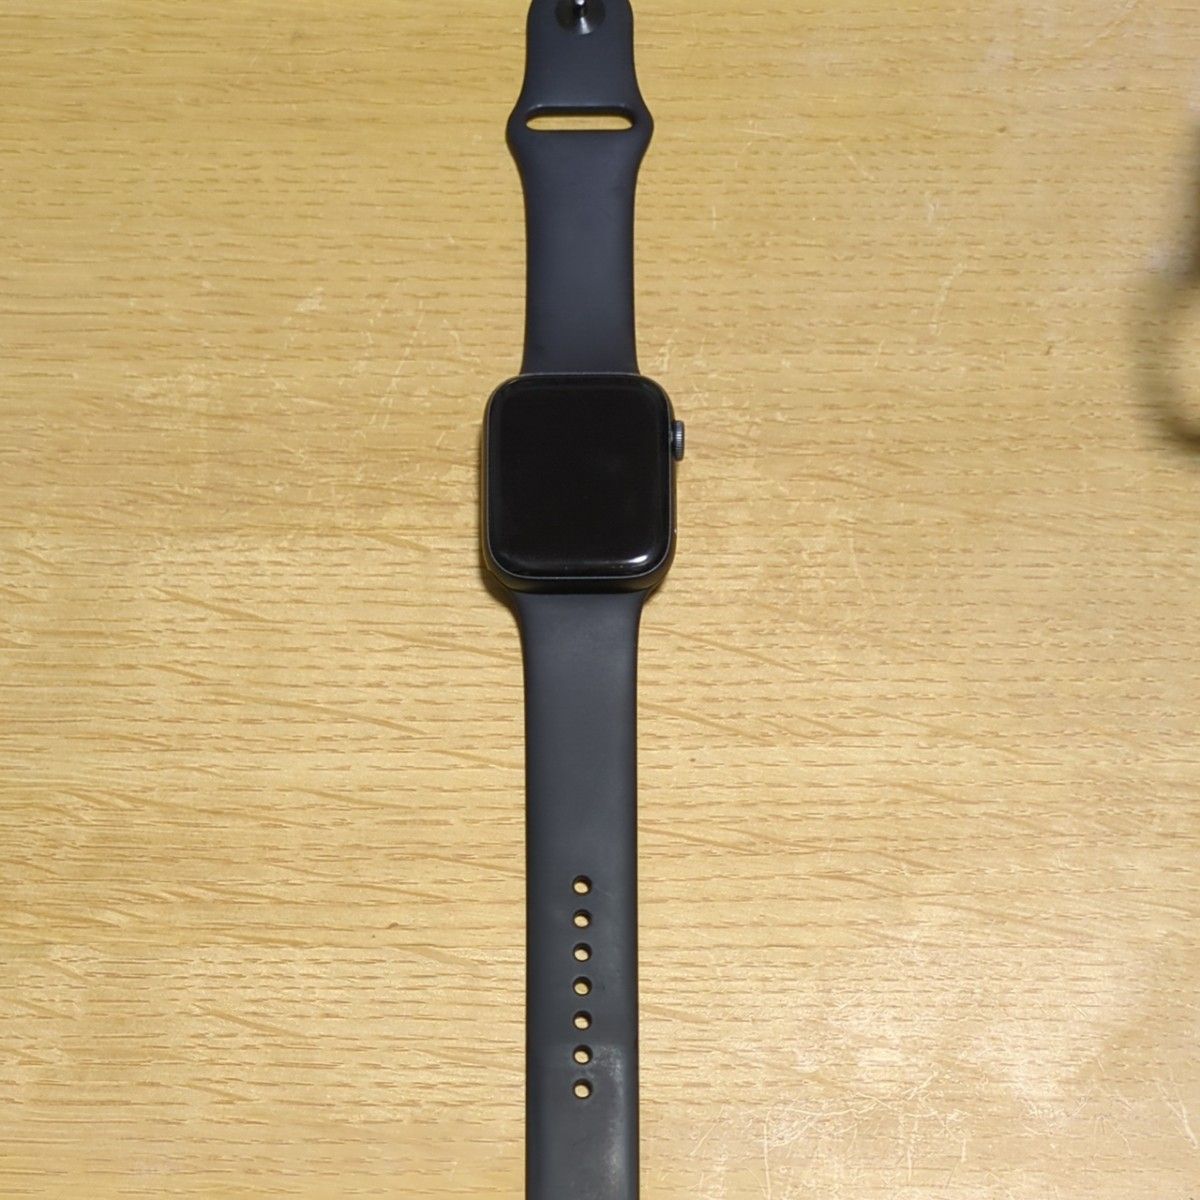 Apple Watch Series 4 GPSモデル 44mm スペースグレイアルミニウム